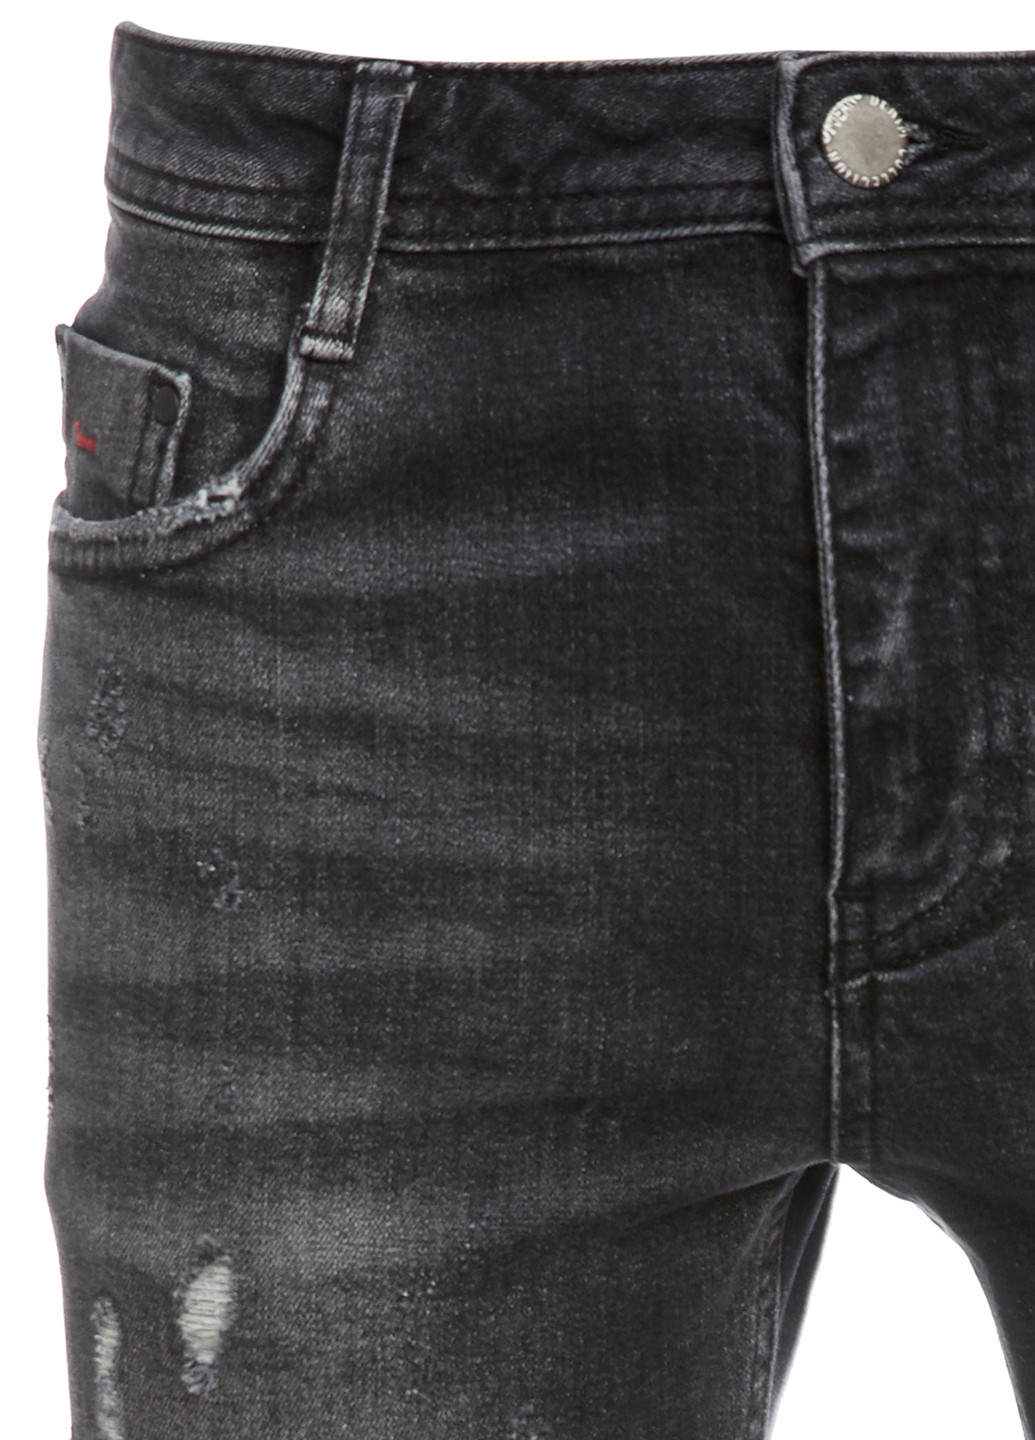 Шорты DeFacto чёрные джинсовые хлопок